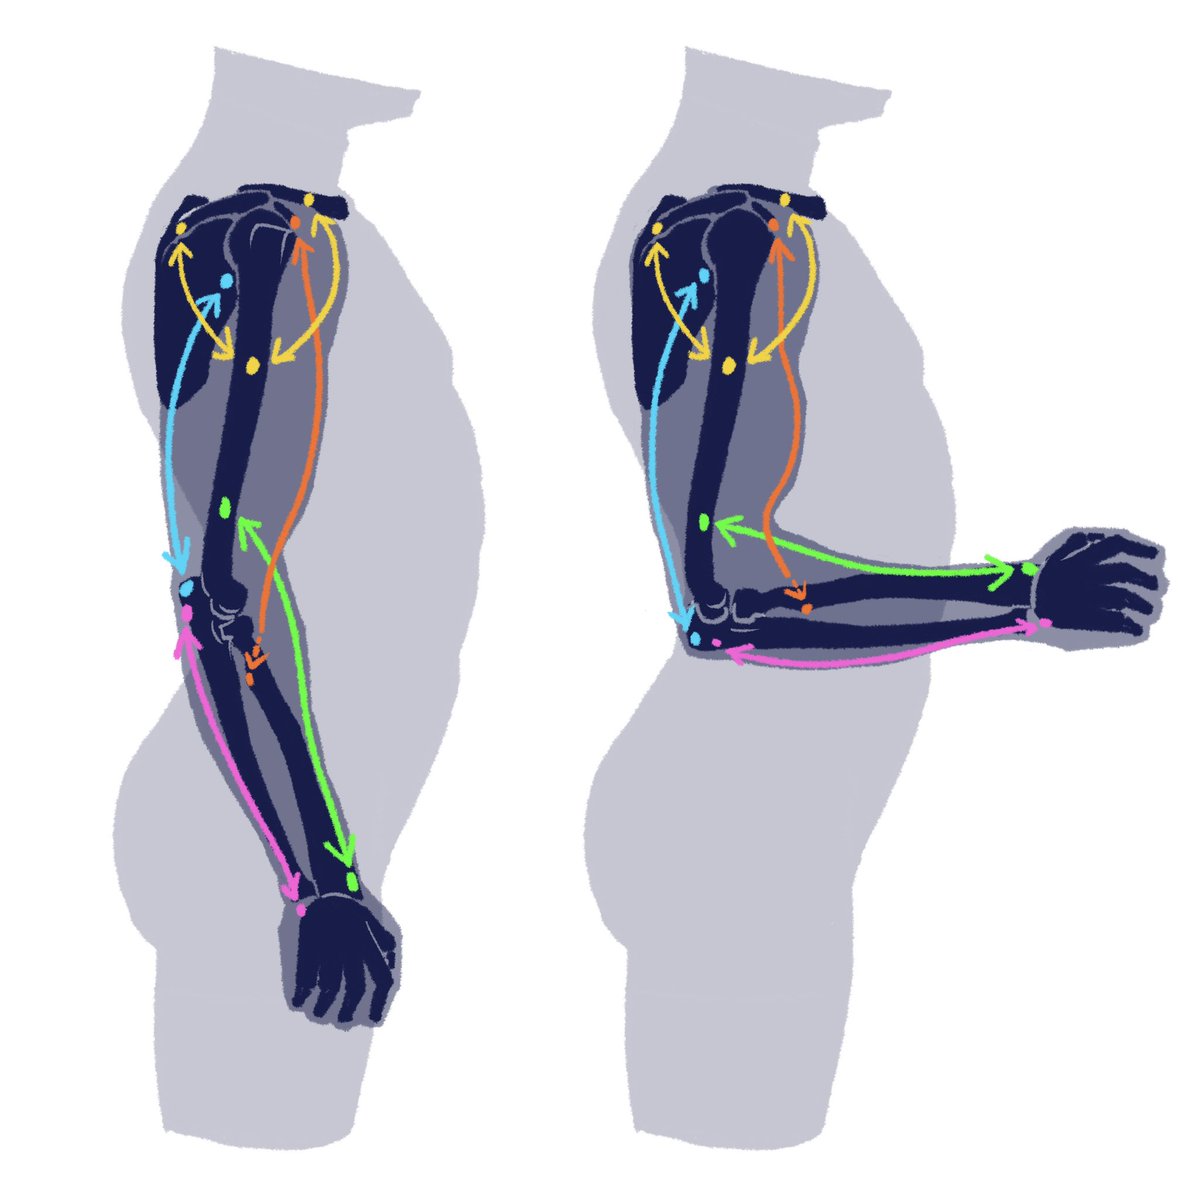 「腕の輪郭を辿ると行き着く部分。 」|伊豆の美術解剖学者のイラスト